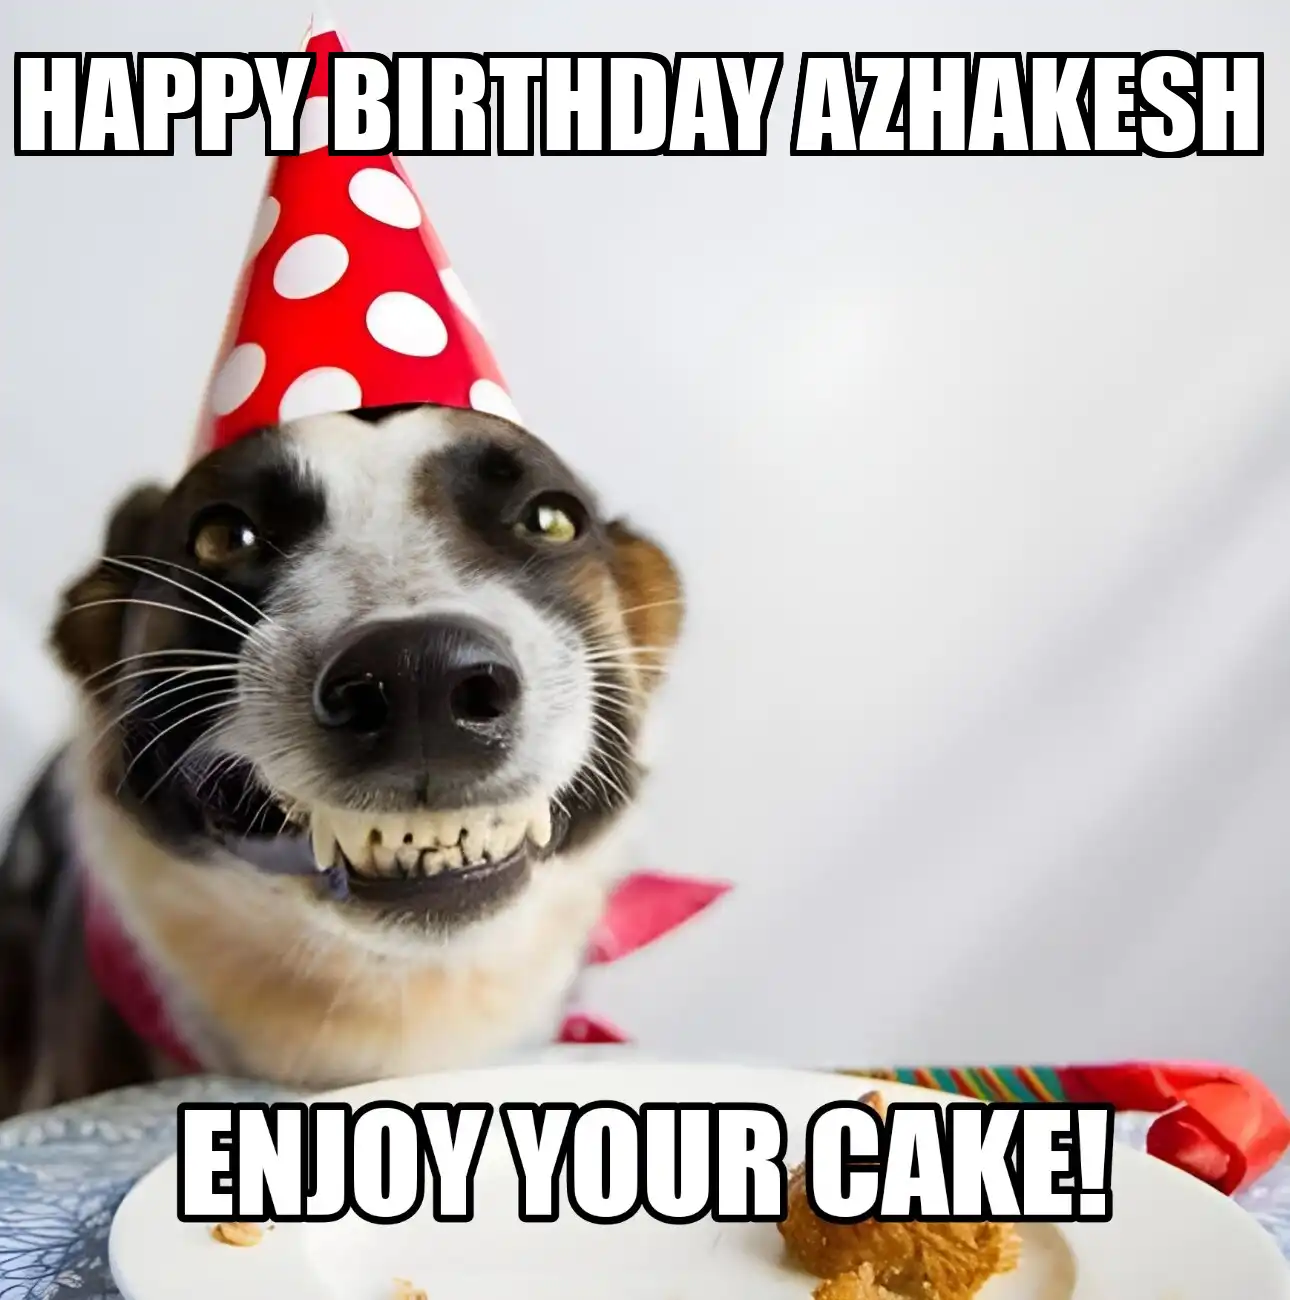 Happy Birthday Azhakesh Enjoy Your Cake Dog Meme